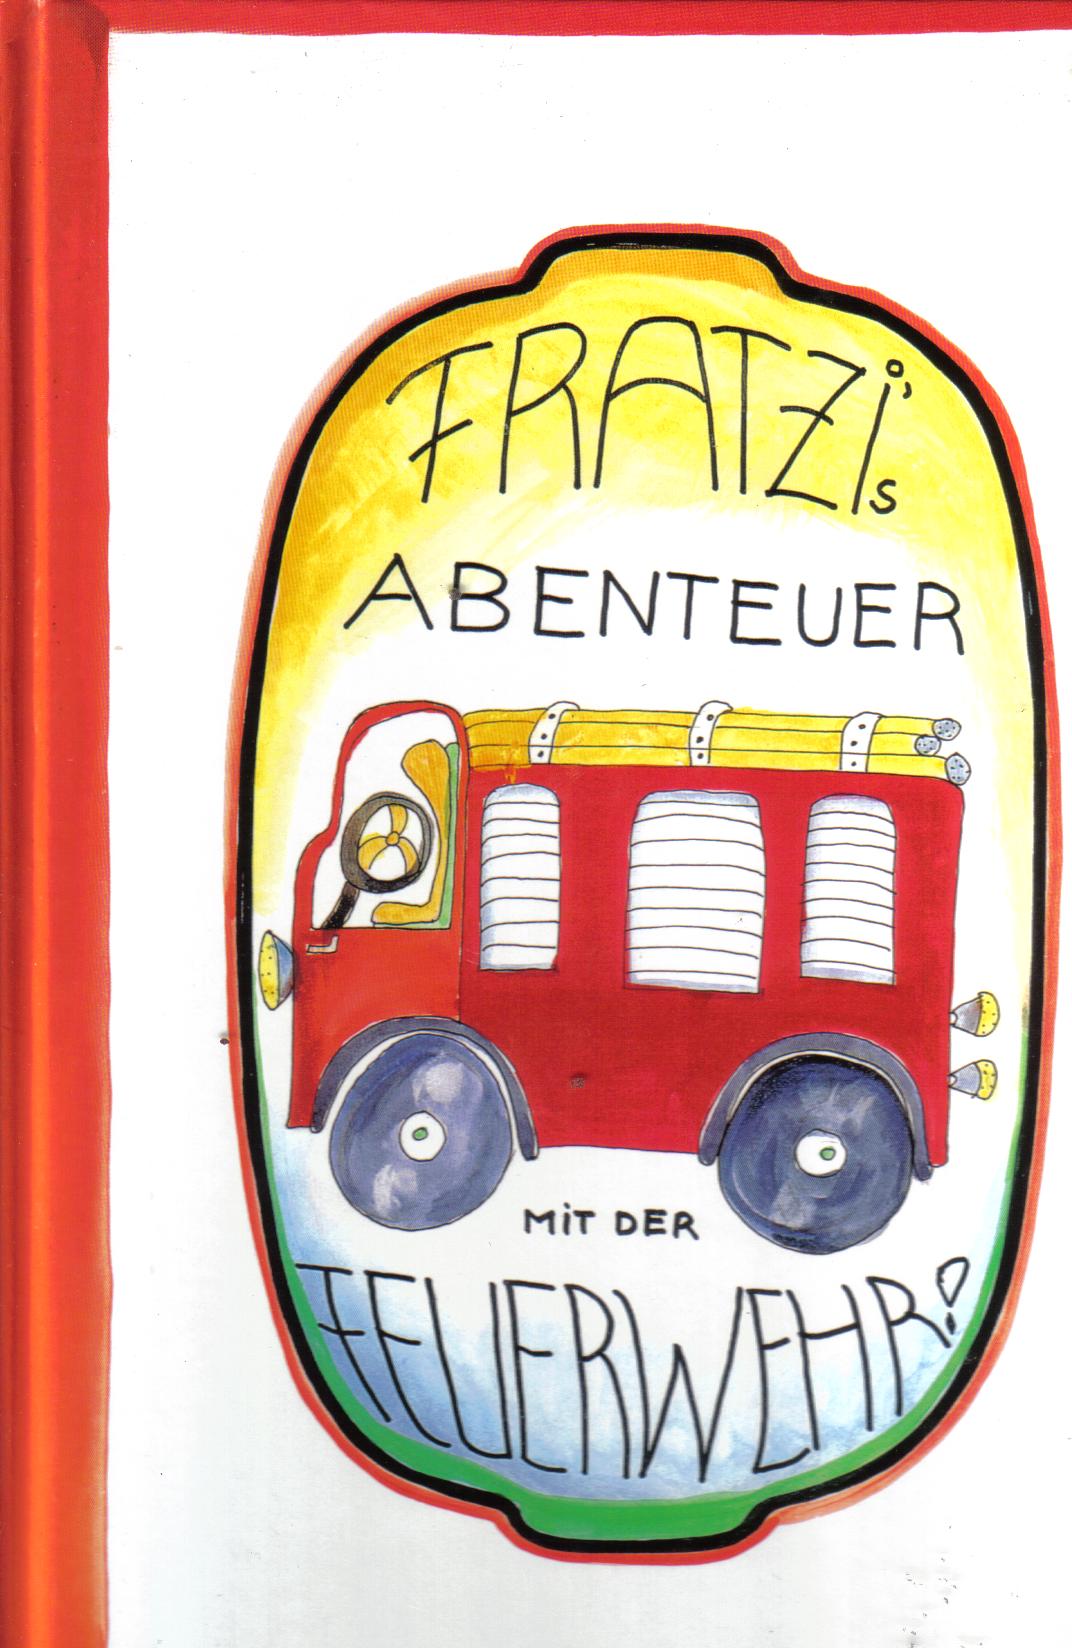 Frantzi`s Abenteuer mit der Feuerwehr